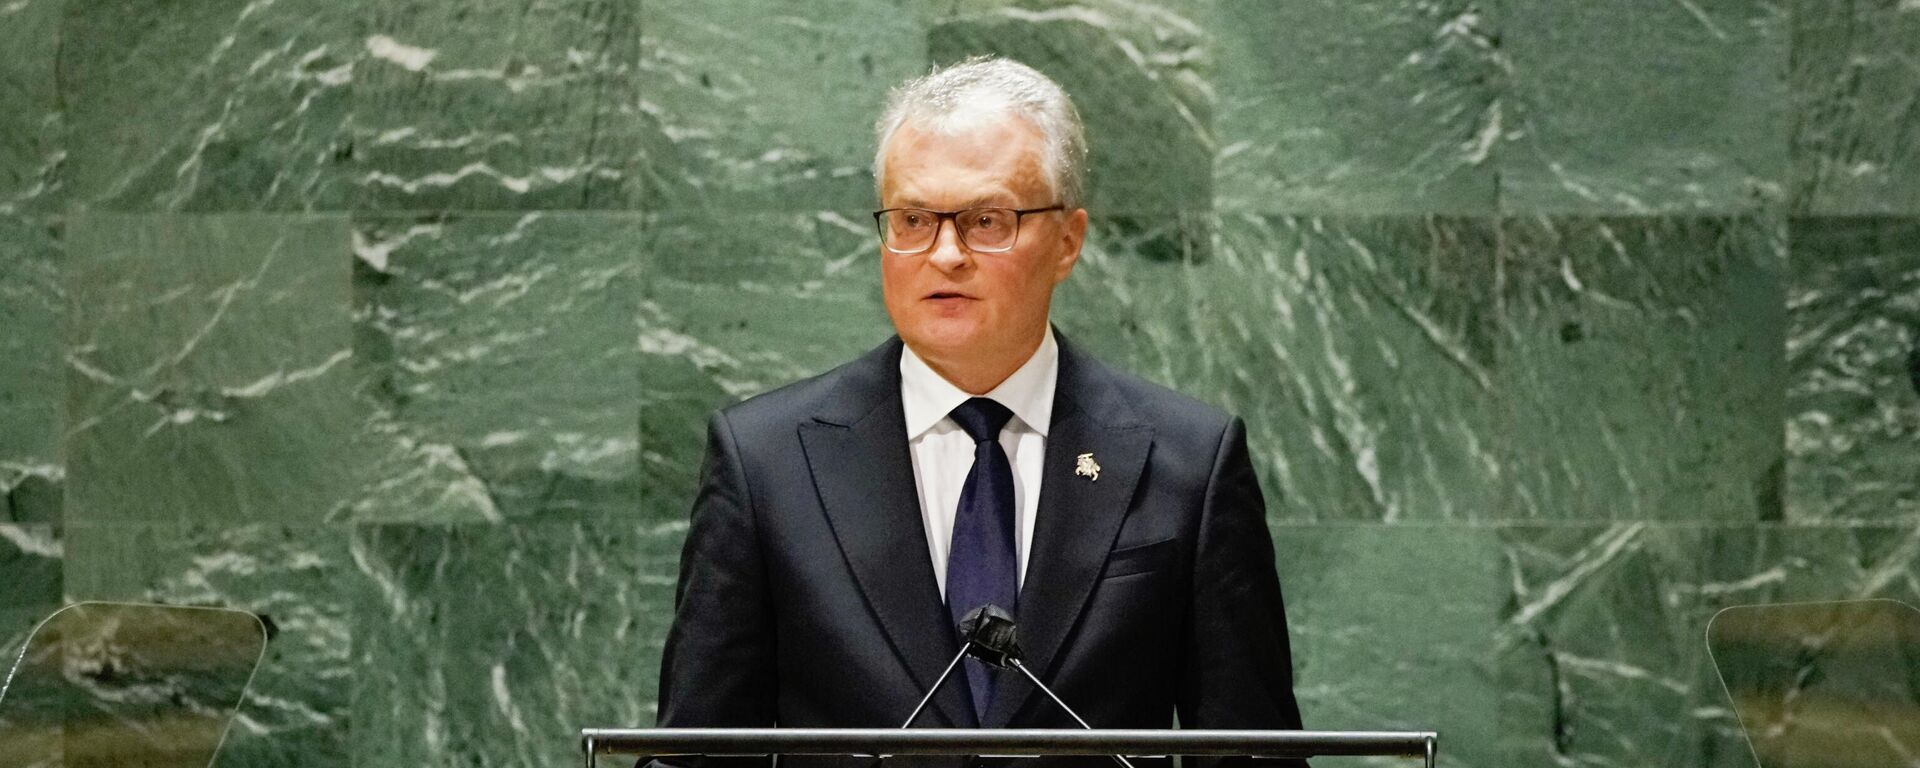 Президент Литвы Гитанас Науседа выступил на Генеральной Ассамблее ООН - Sputnik Литва, 1920, 23.09.2021